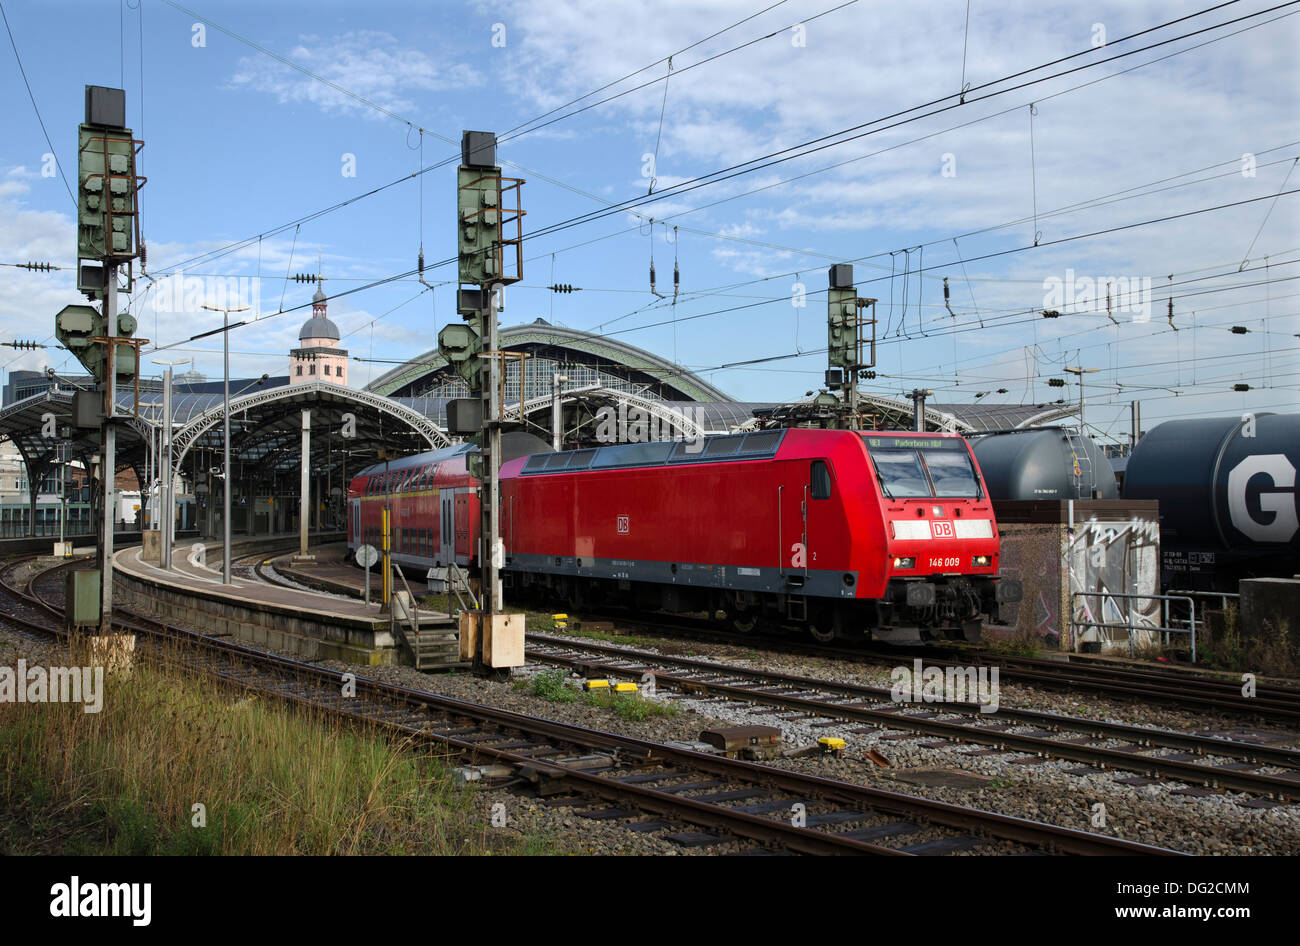 Train électrique avec la classe 146 146009 locomotive quittant cologne hbf Cologne Allemagne Banque D'Images